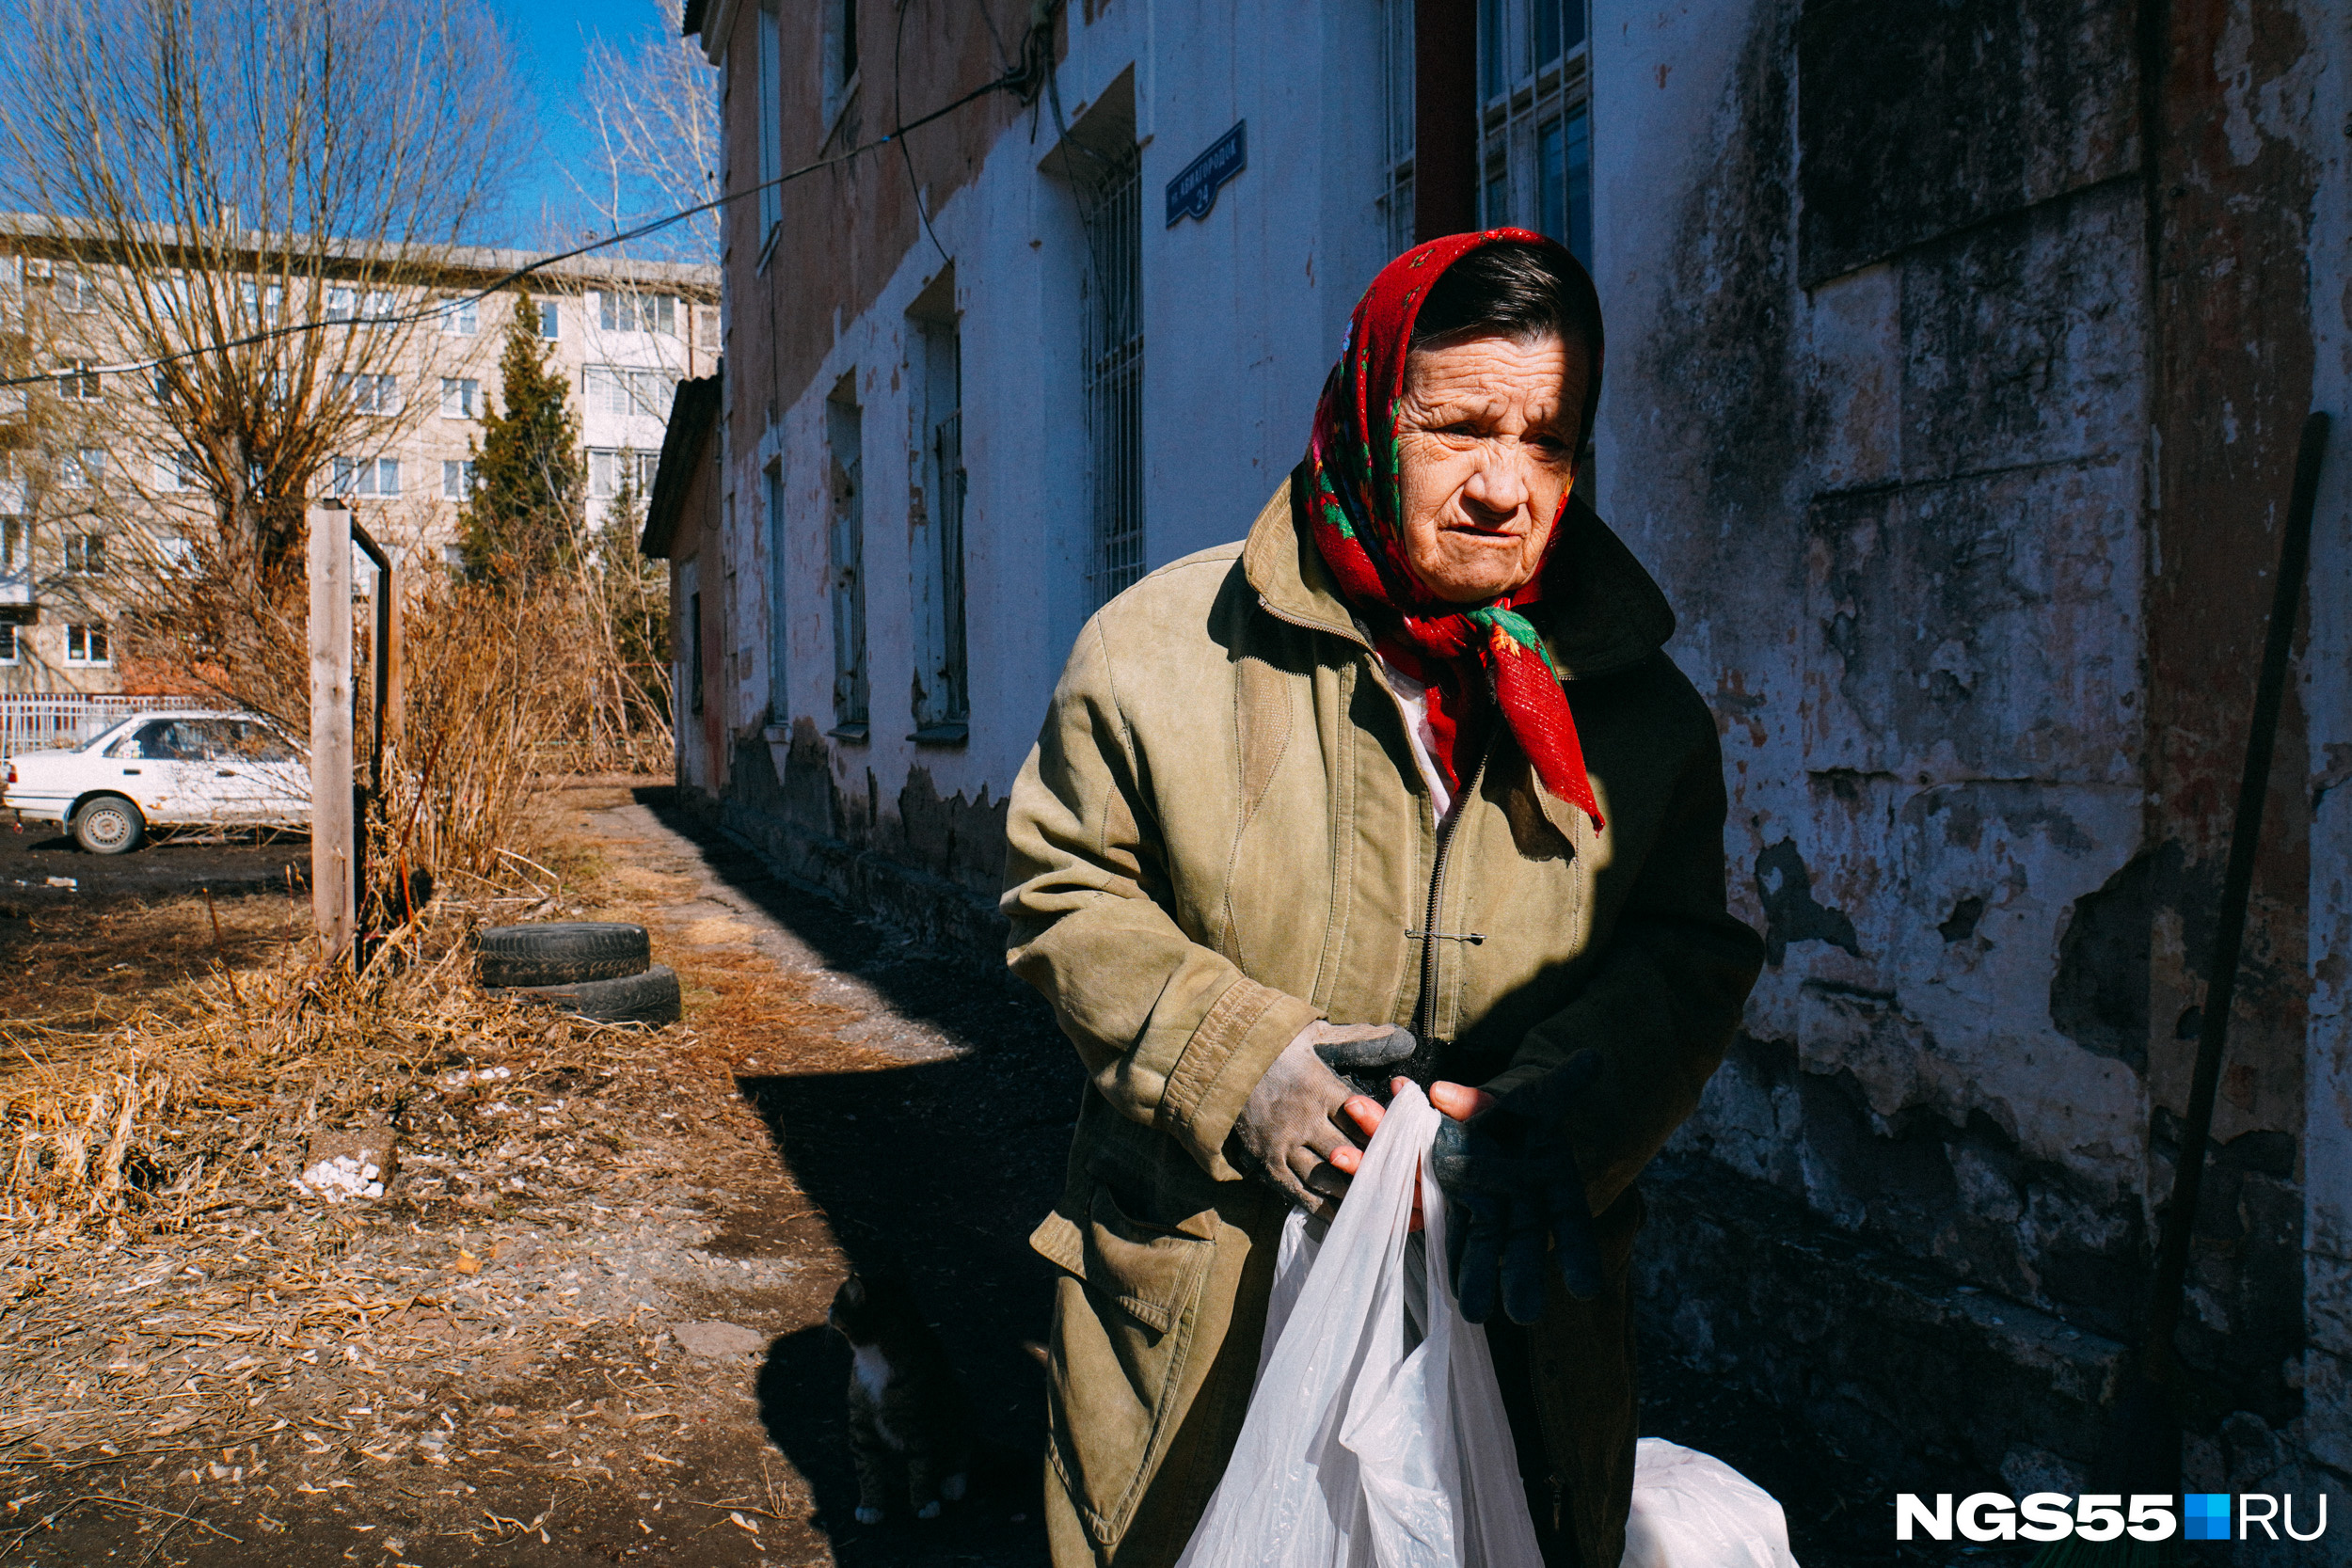 Галина Михайловна ожидала работников, которые должны были почистить канализационный колодец. Он забился доверху